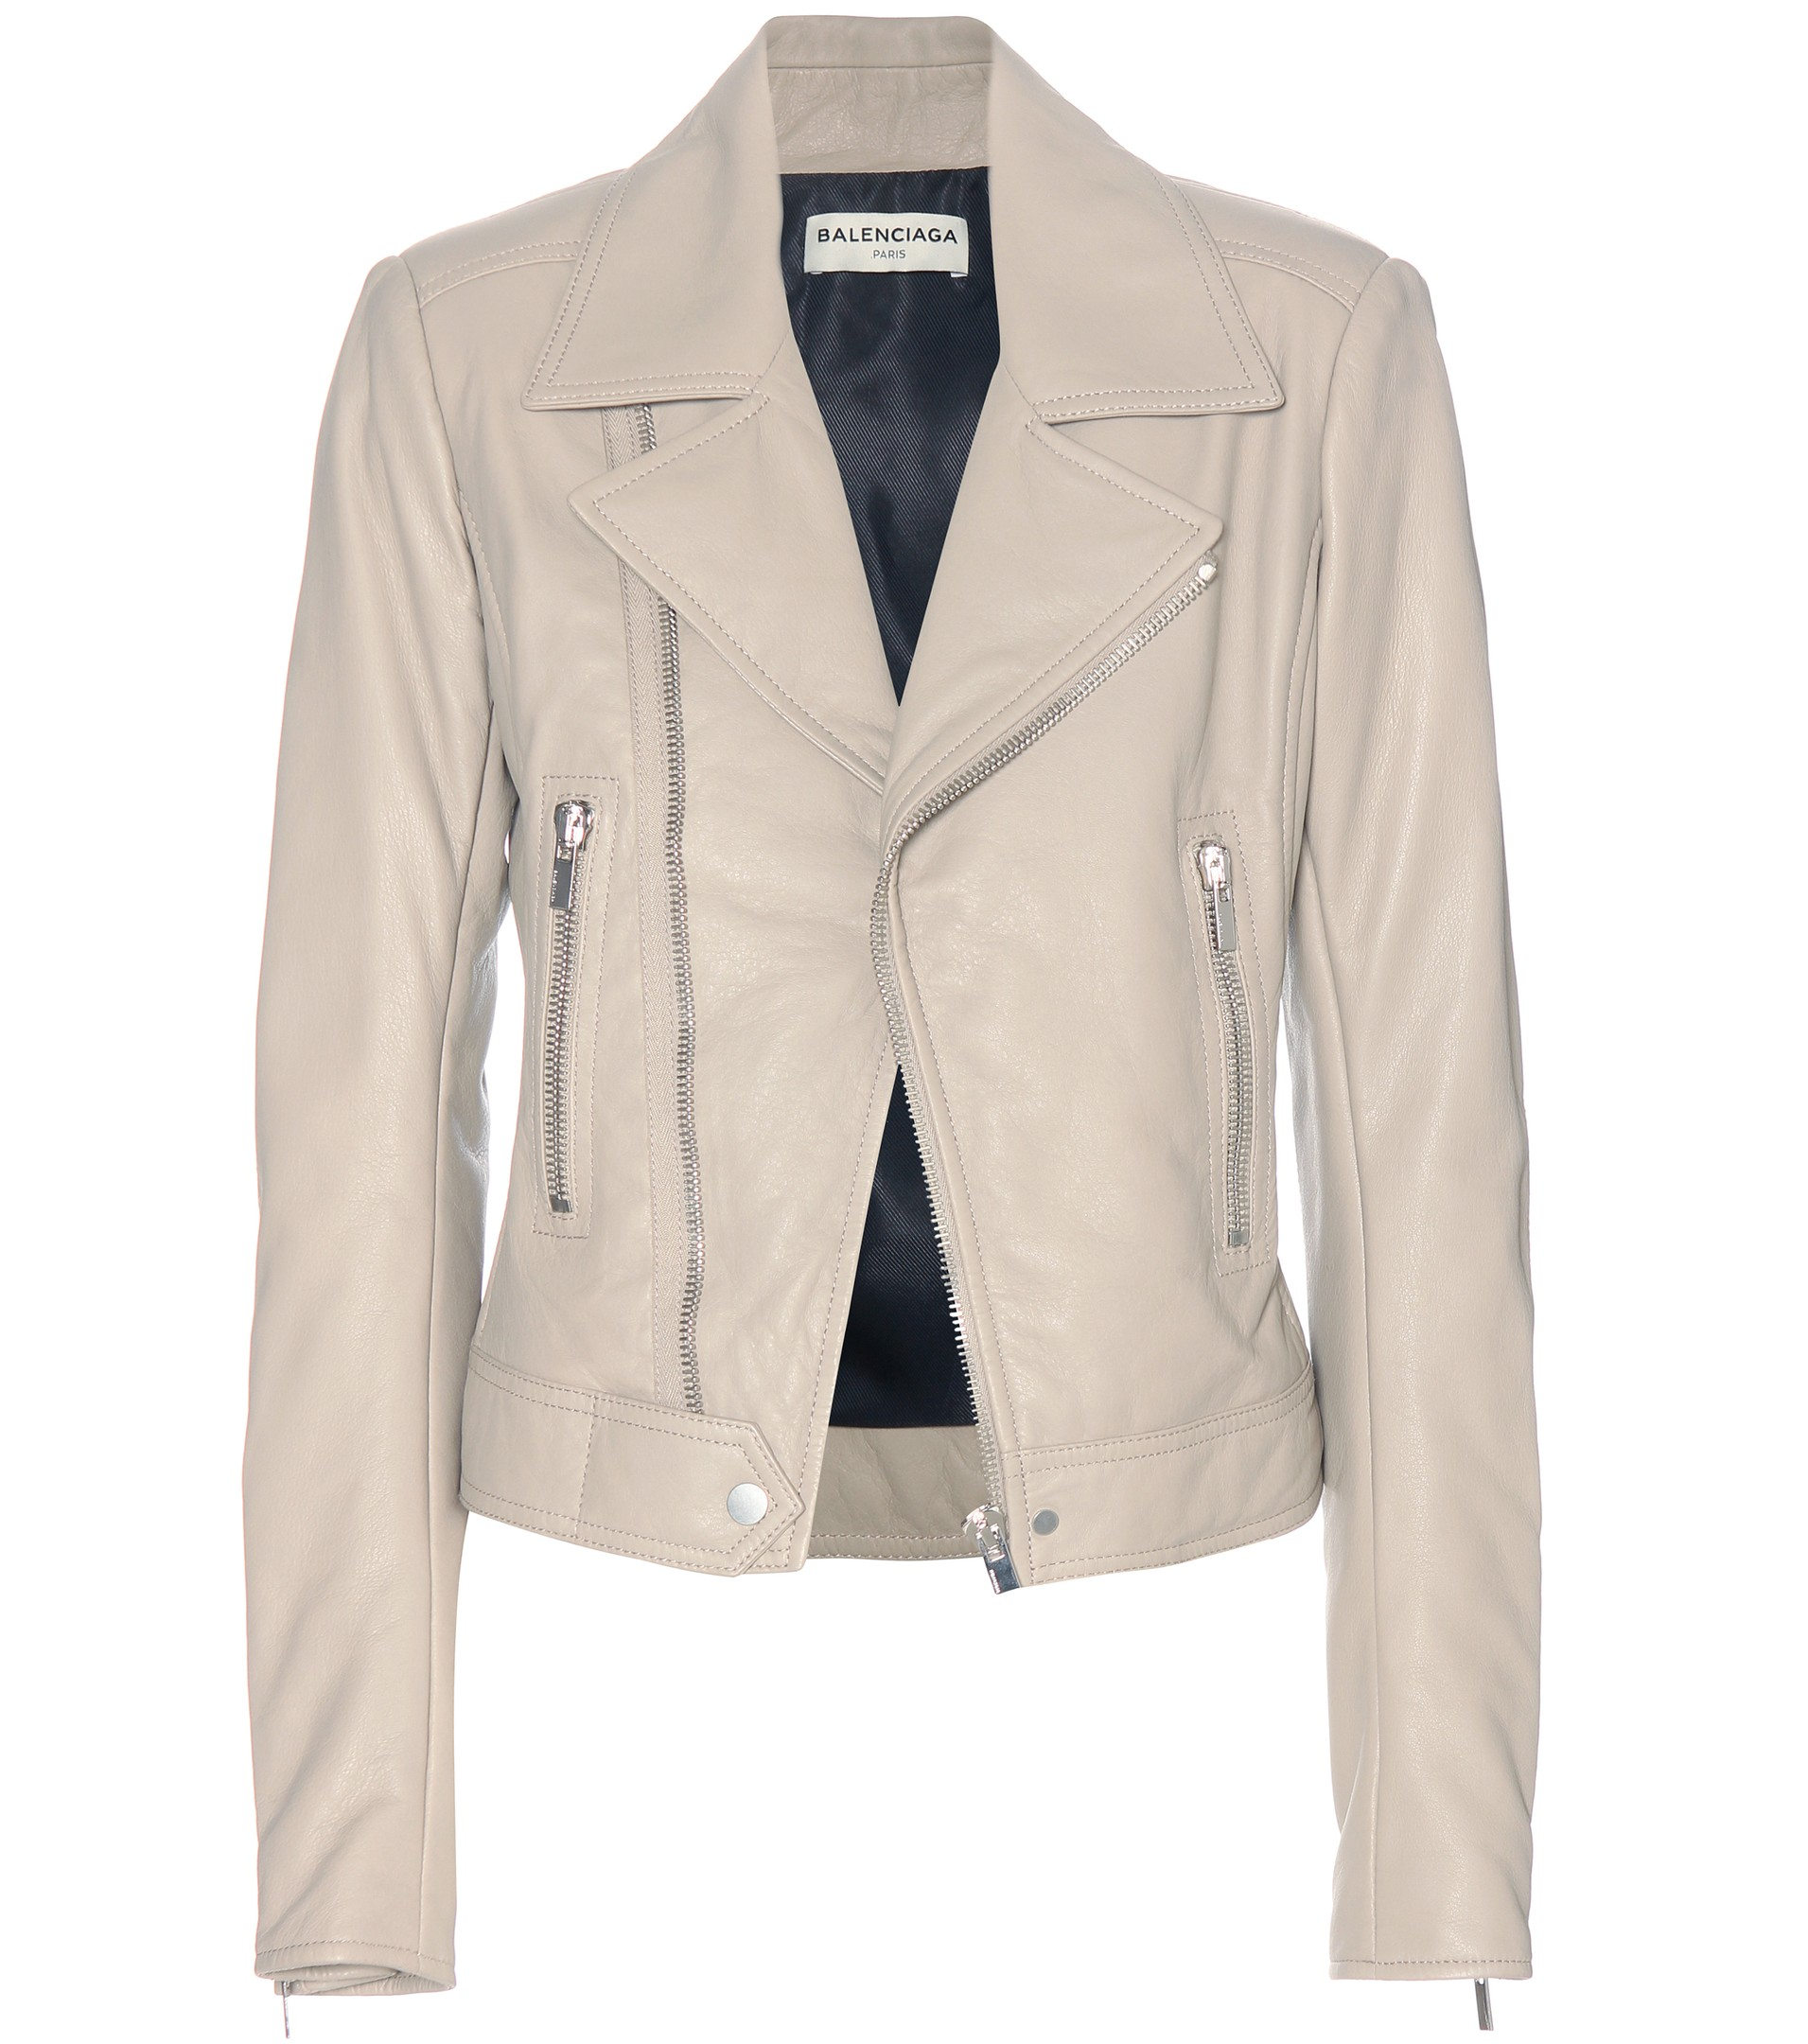 balenciaga white leather jacket